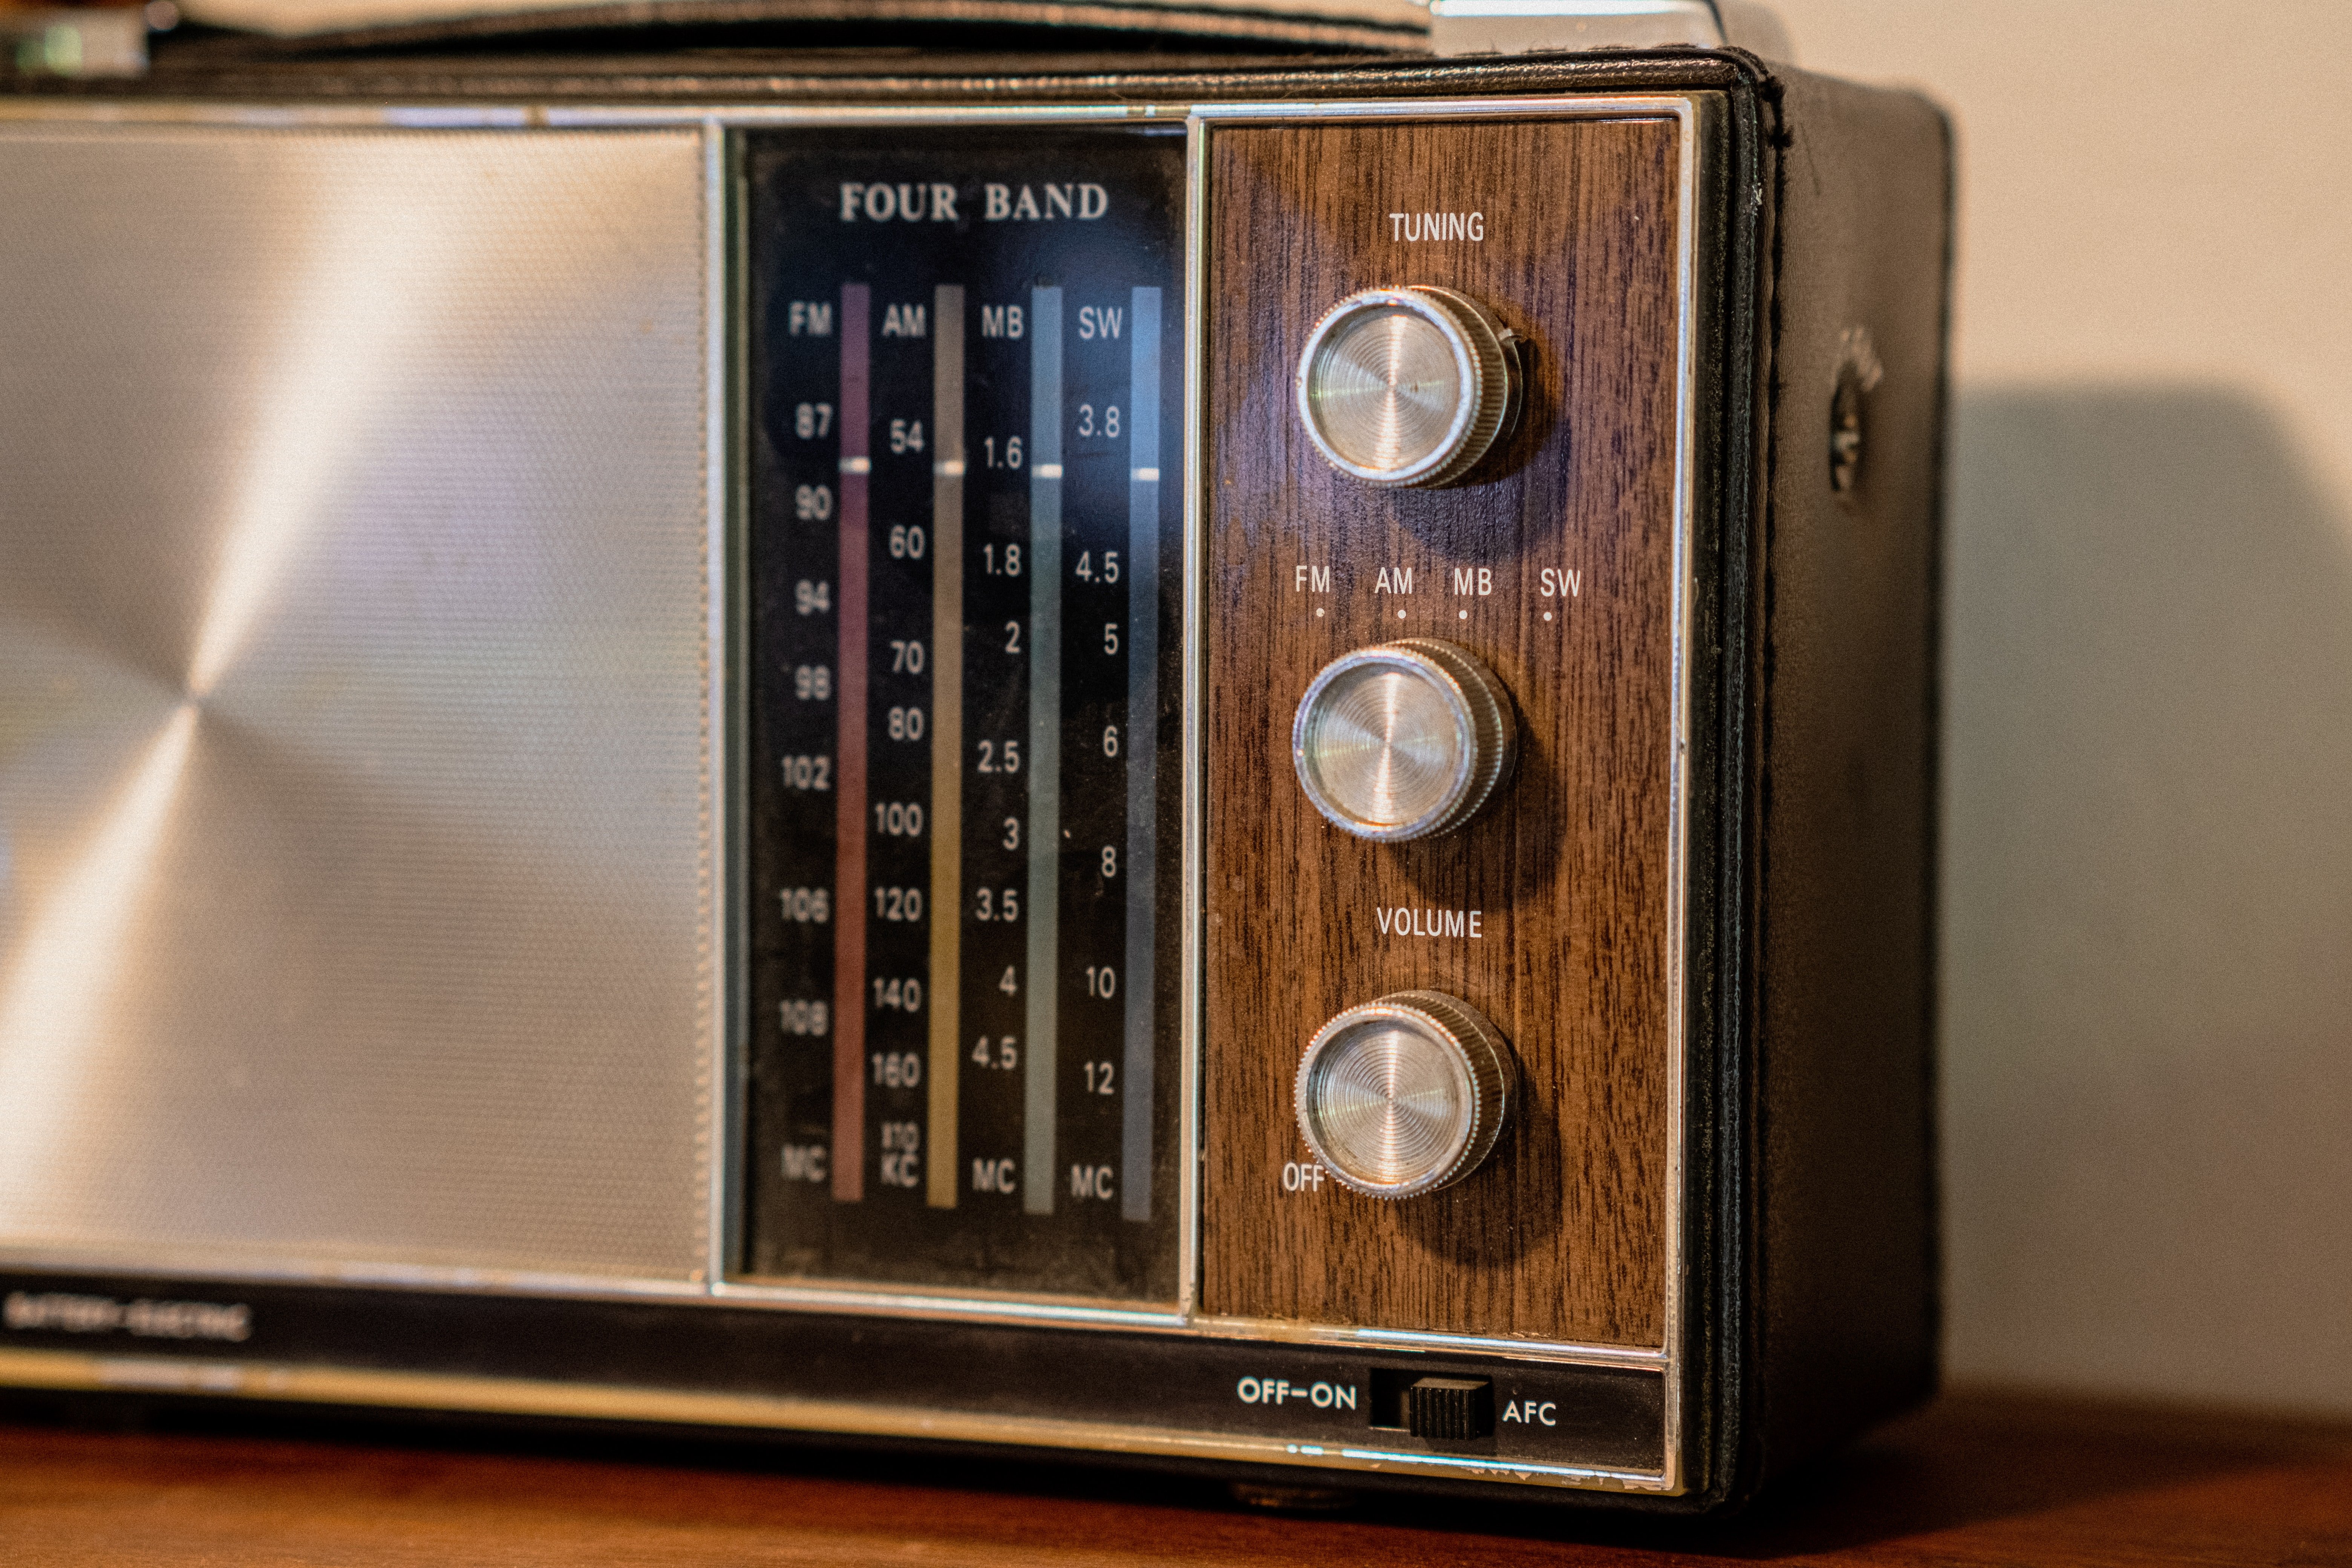 Karl fand in seiner Scheune ein altes Radio. | Quelle: Unsplash